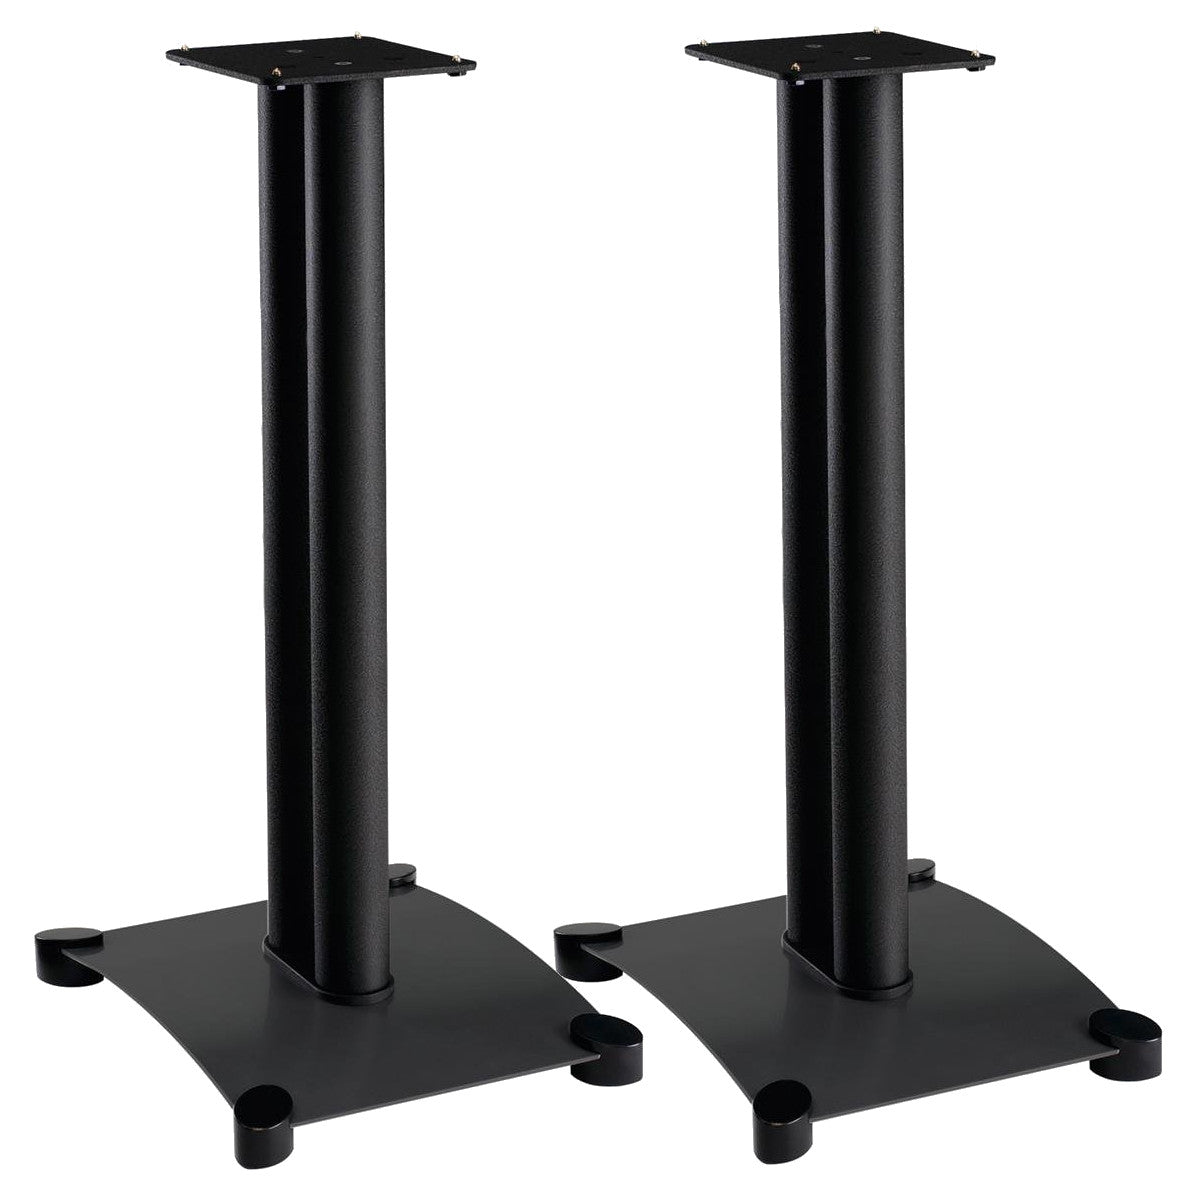 Sanus Sf26 Steel Series 26 Speaker Stands - Pair (Black)